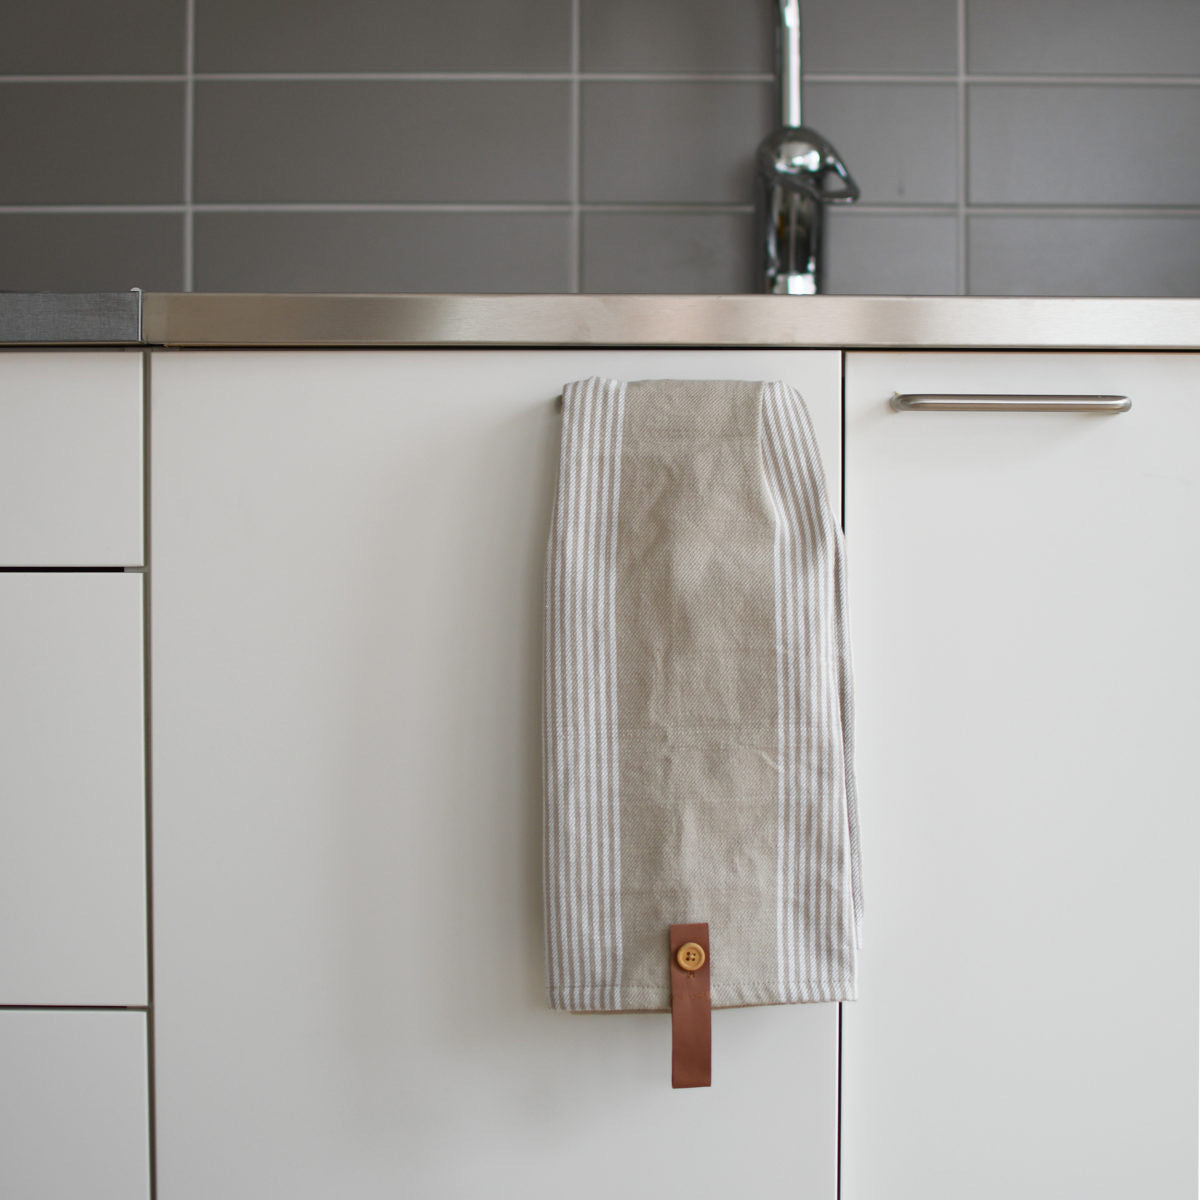 Utveda Beige/ White kitchen towel